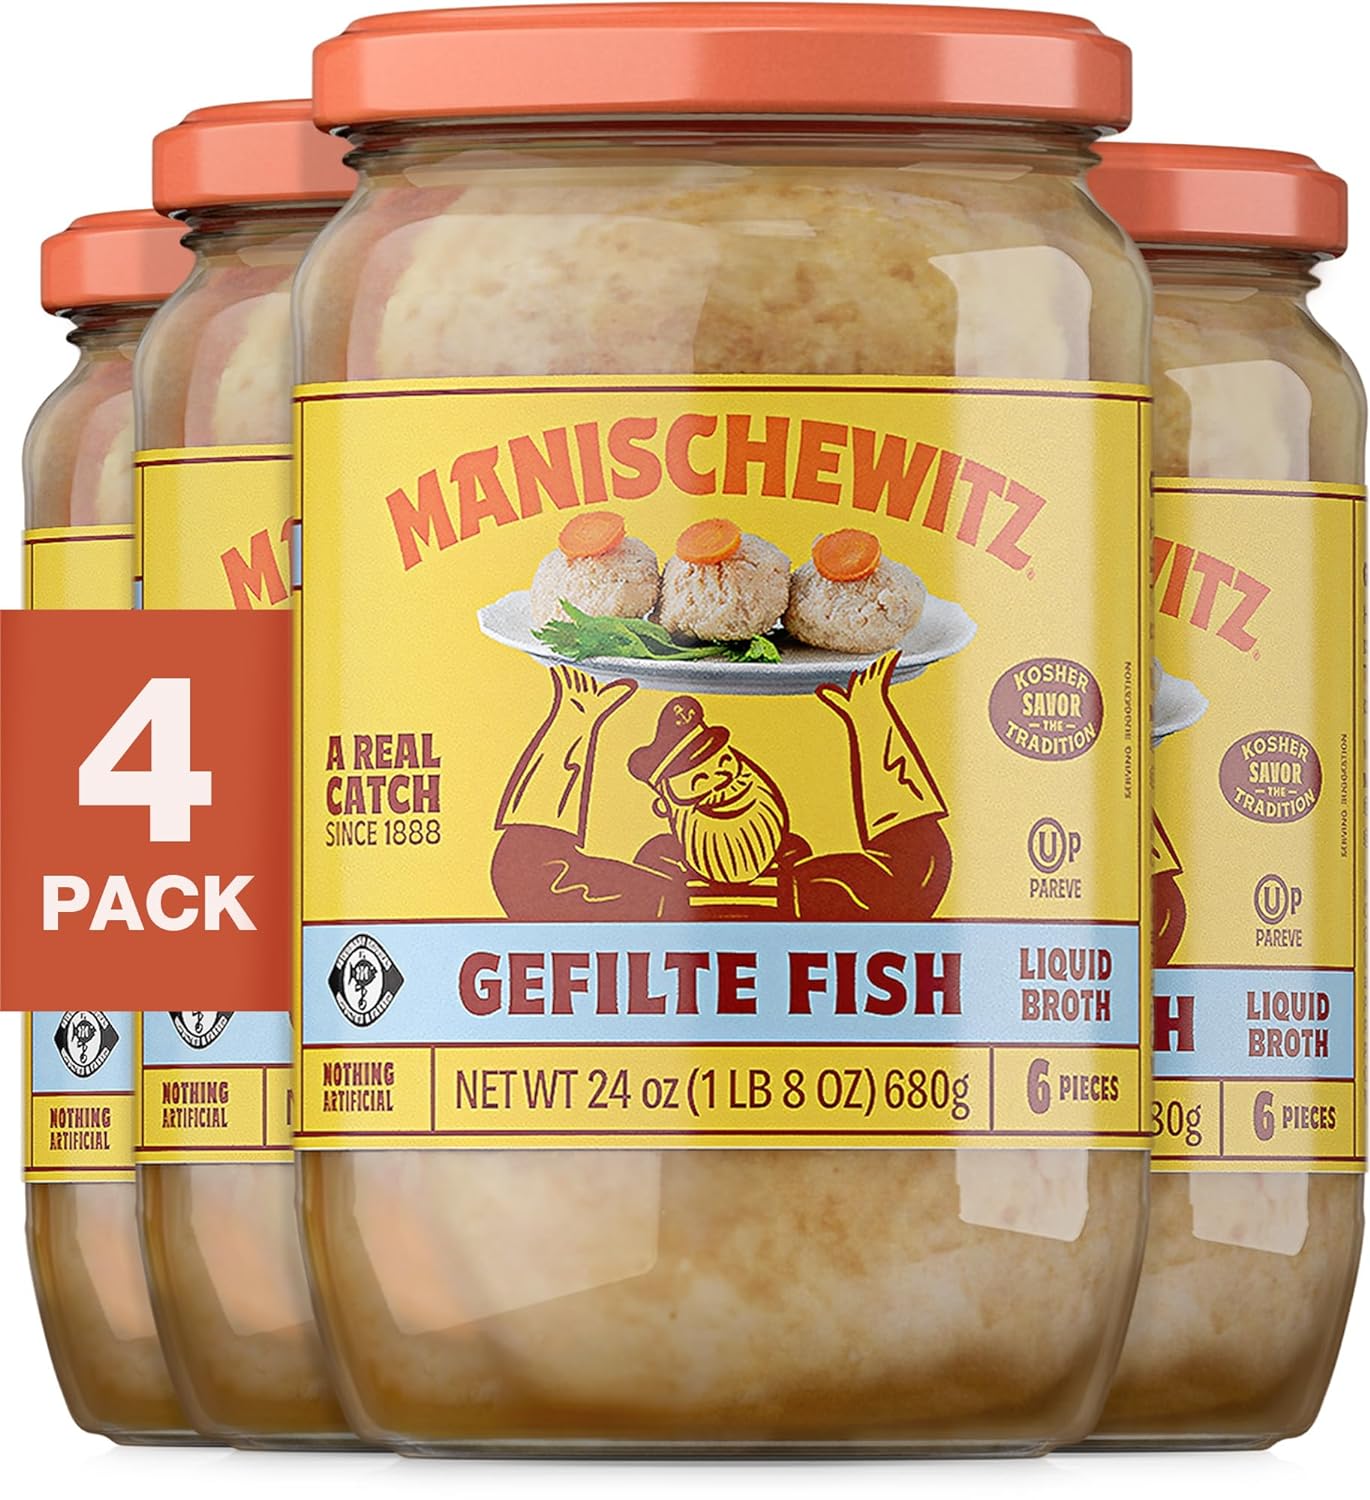 Manischewitz Gefilte Fish in Liquid Broth, 24 oz (4 Pack) | Protein Rich | Kosher for Passover | No MSG